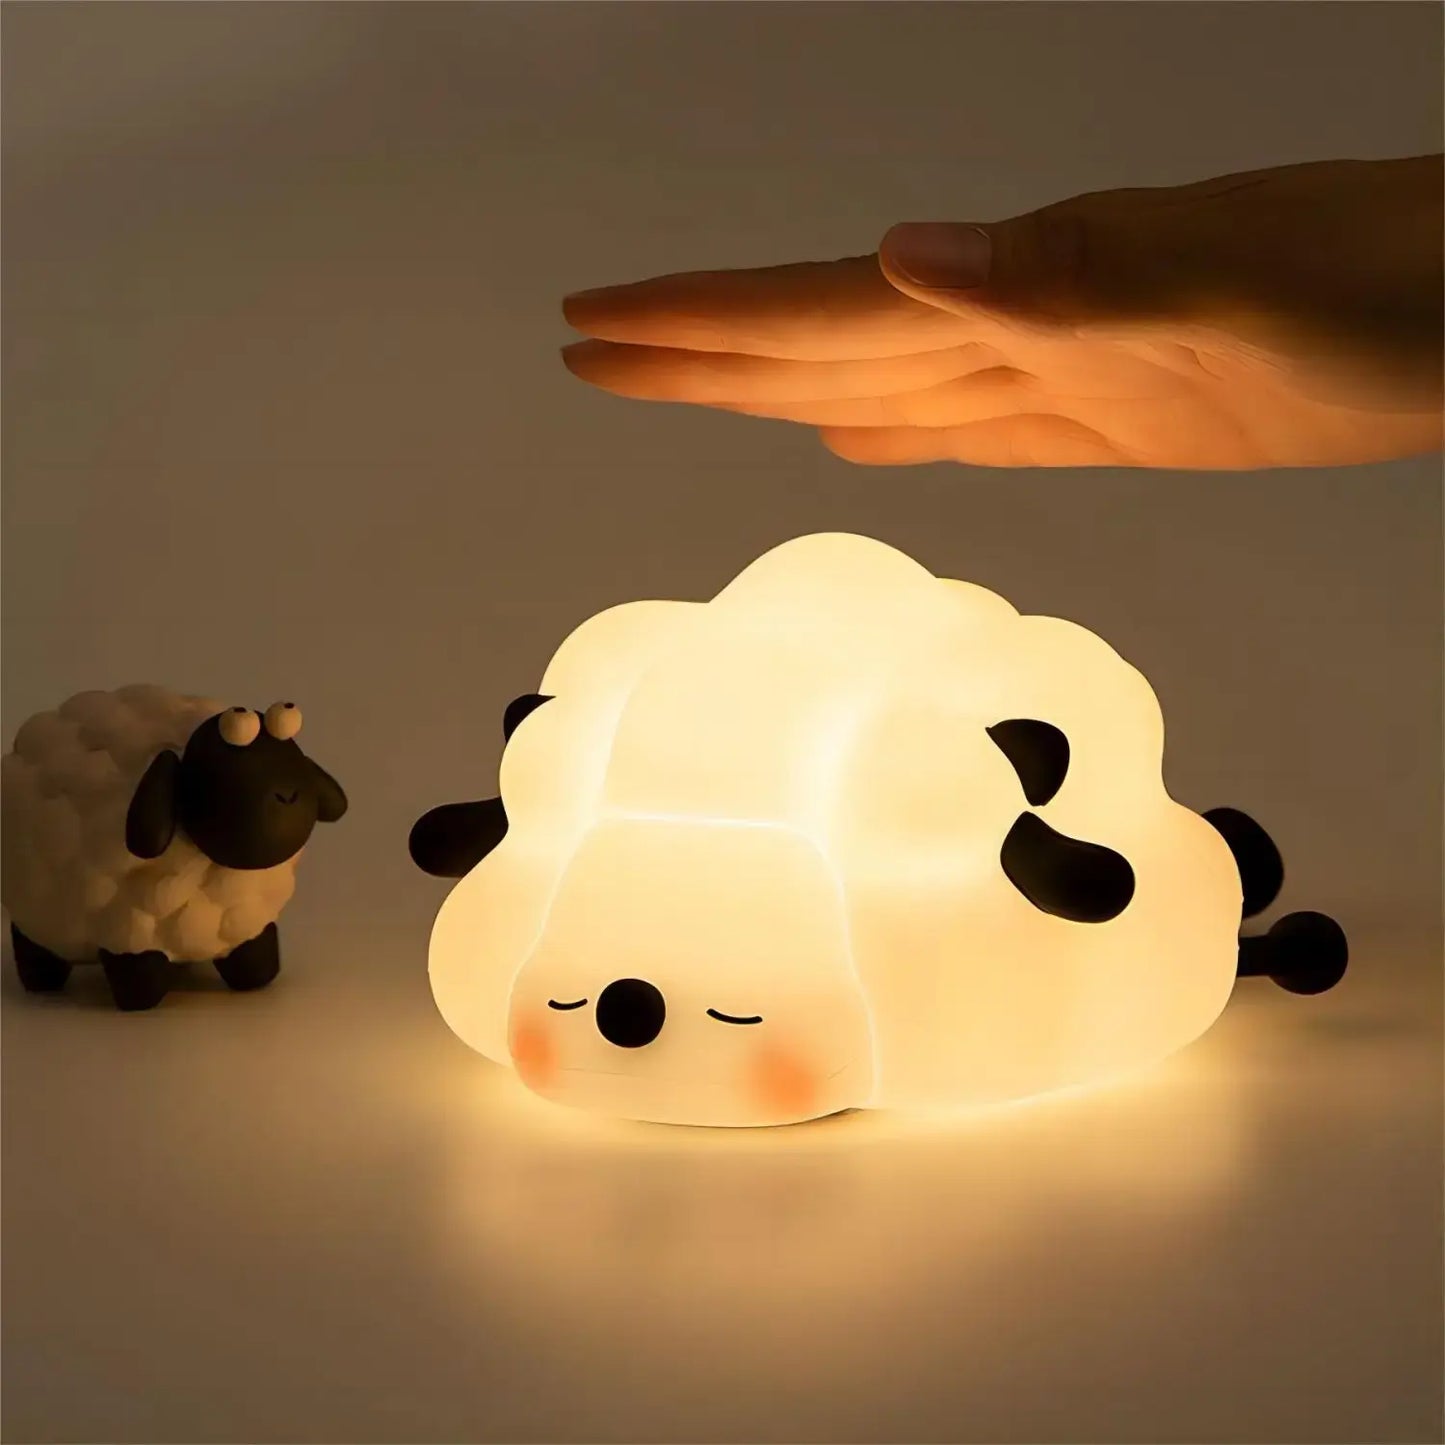 Cute animal lamps